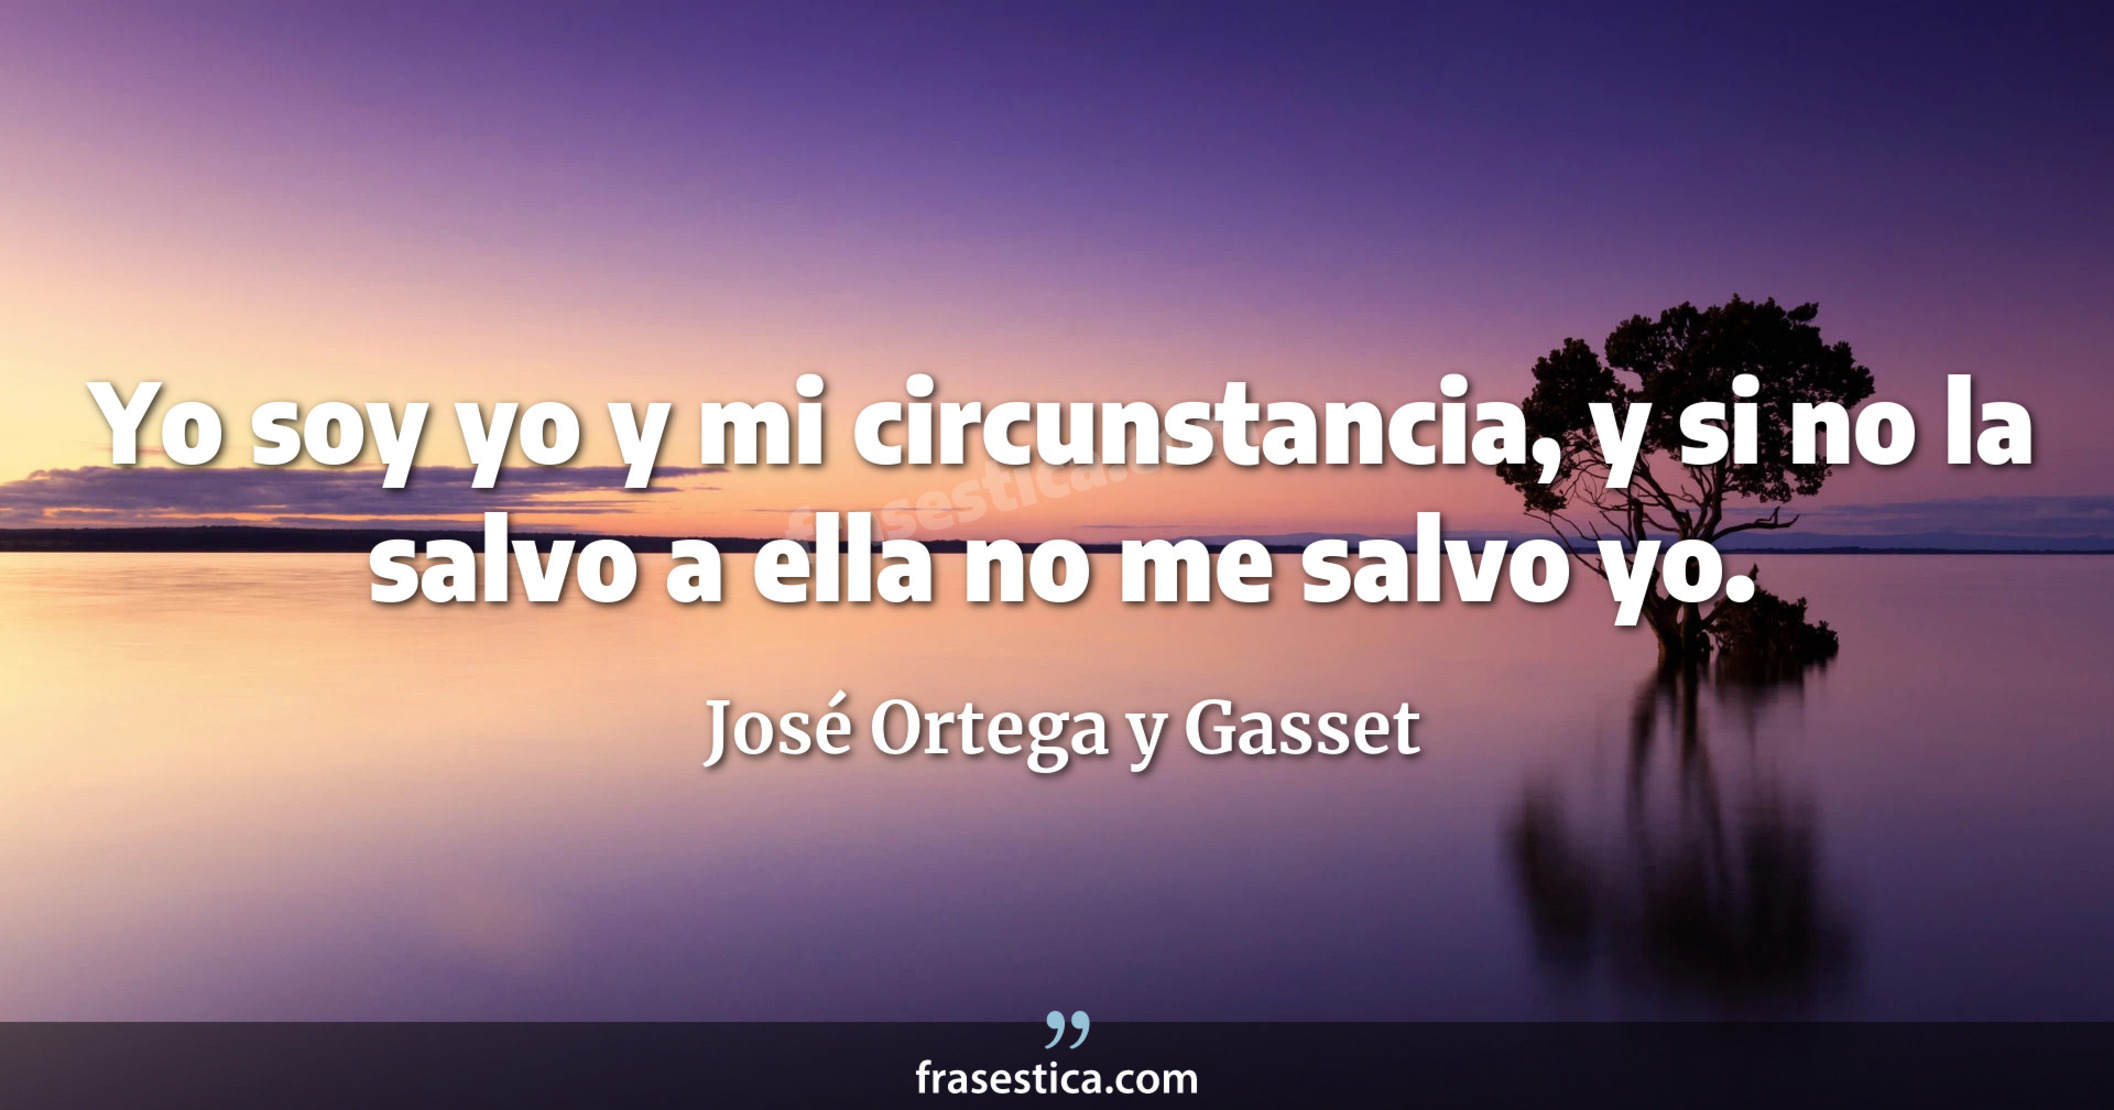 Yo soy yo y mi circunstancia, y si no la salvo a ella no me salvo yo. - José Ortega y Gasset